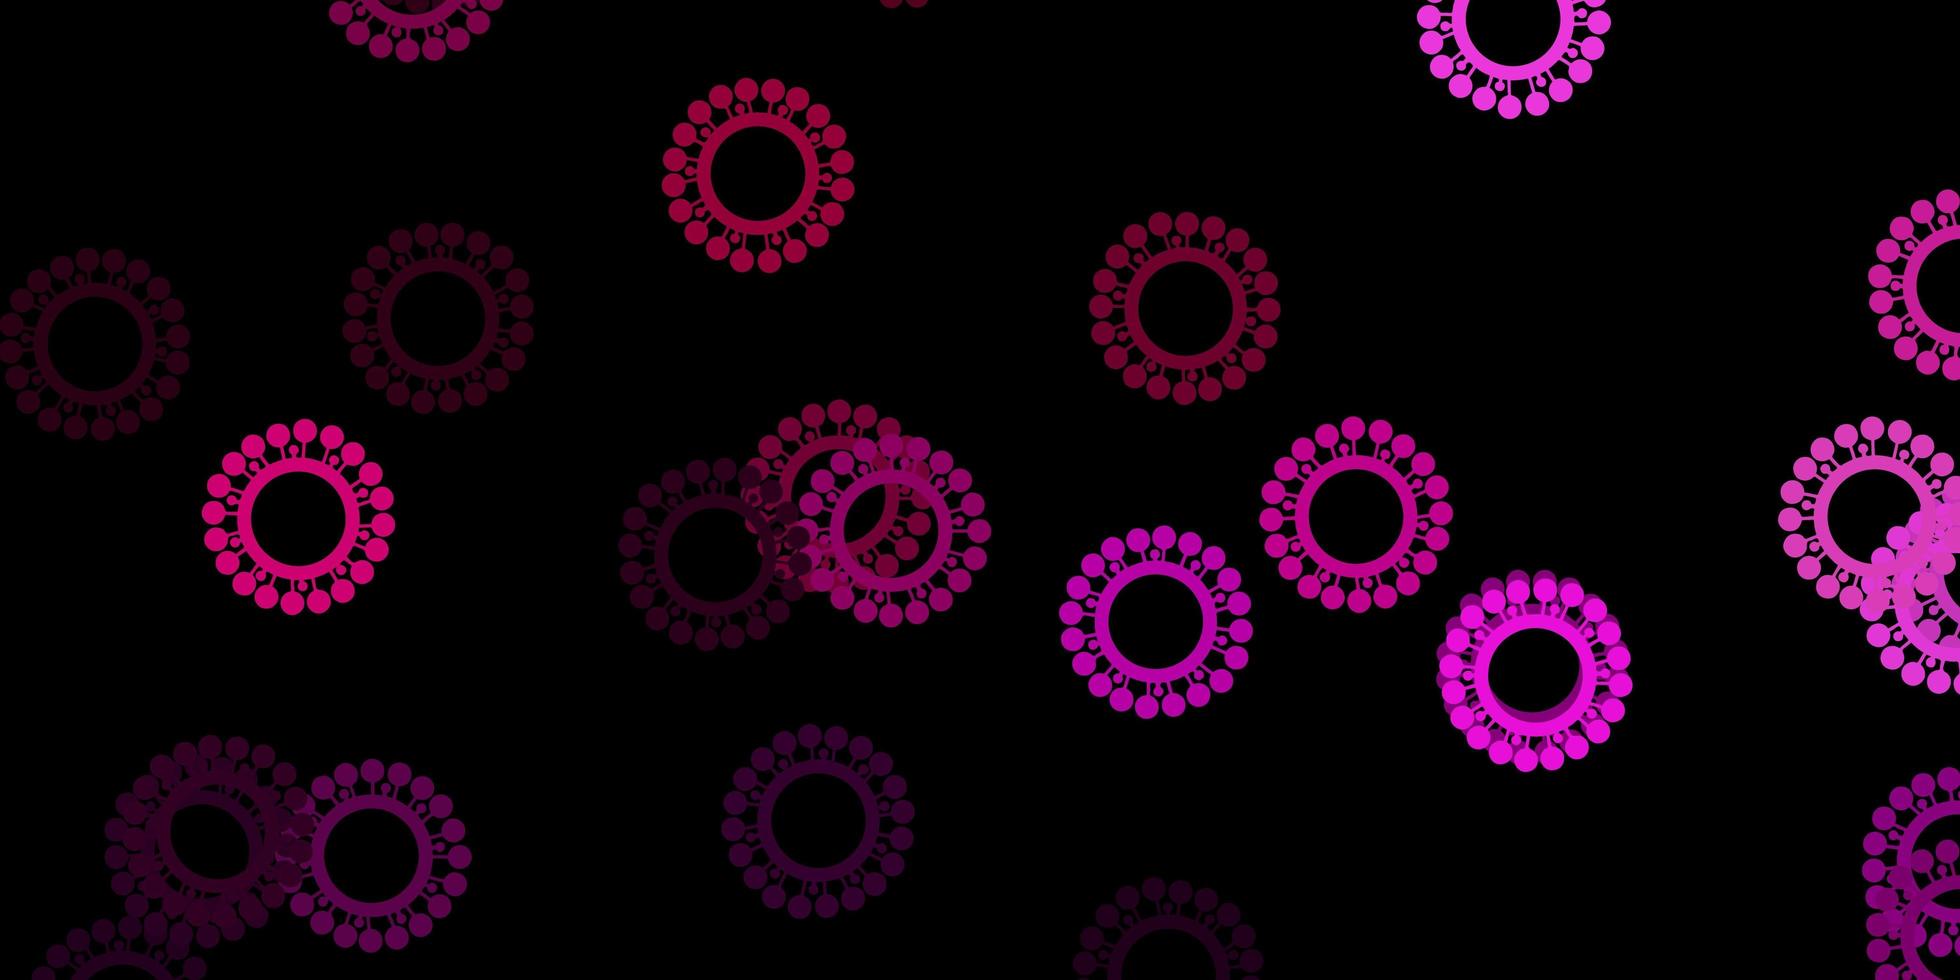 mörkrosa vektor bakgrund med virussymboler.